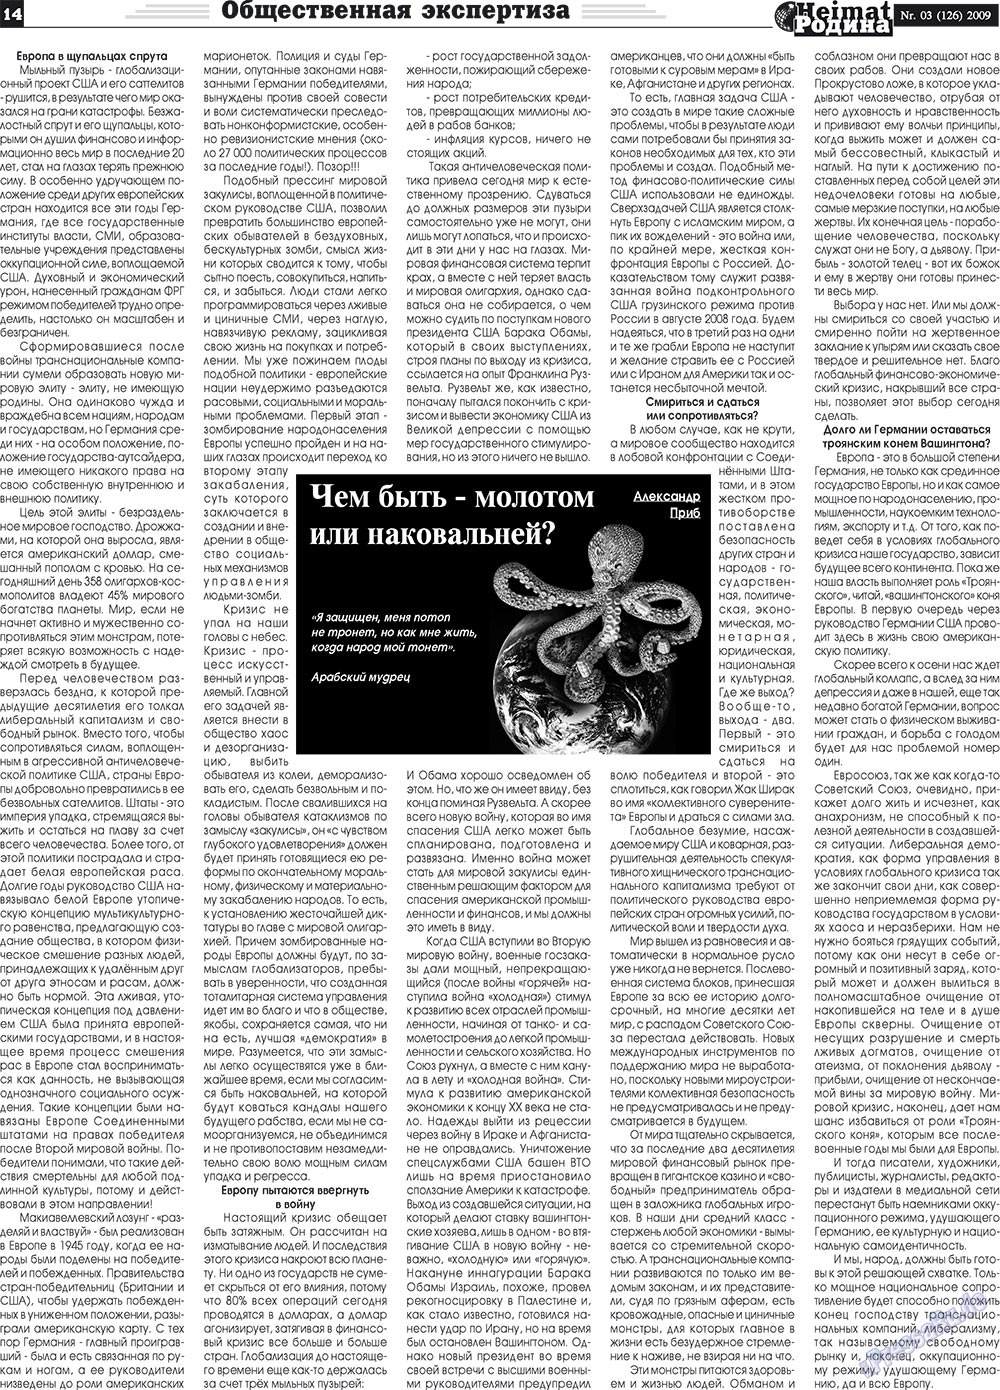 Heimat-Родина (газета). 2009 год, номер 3, стр. 14